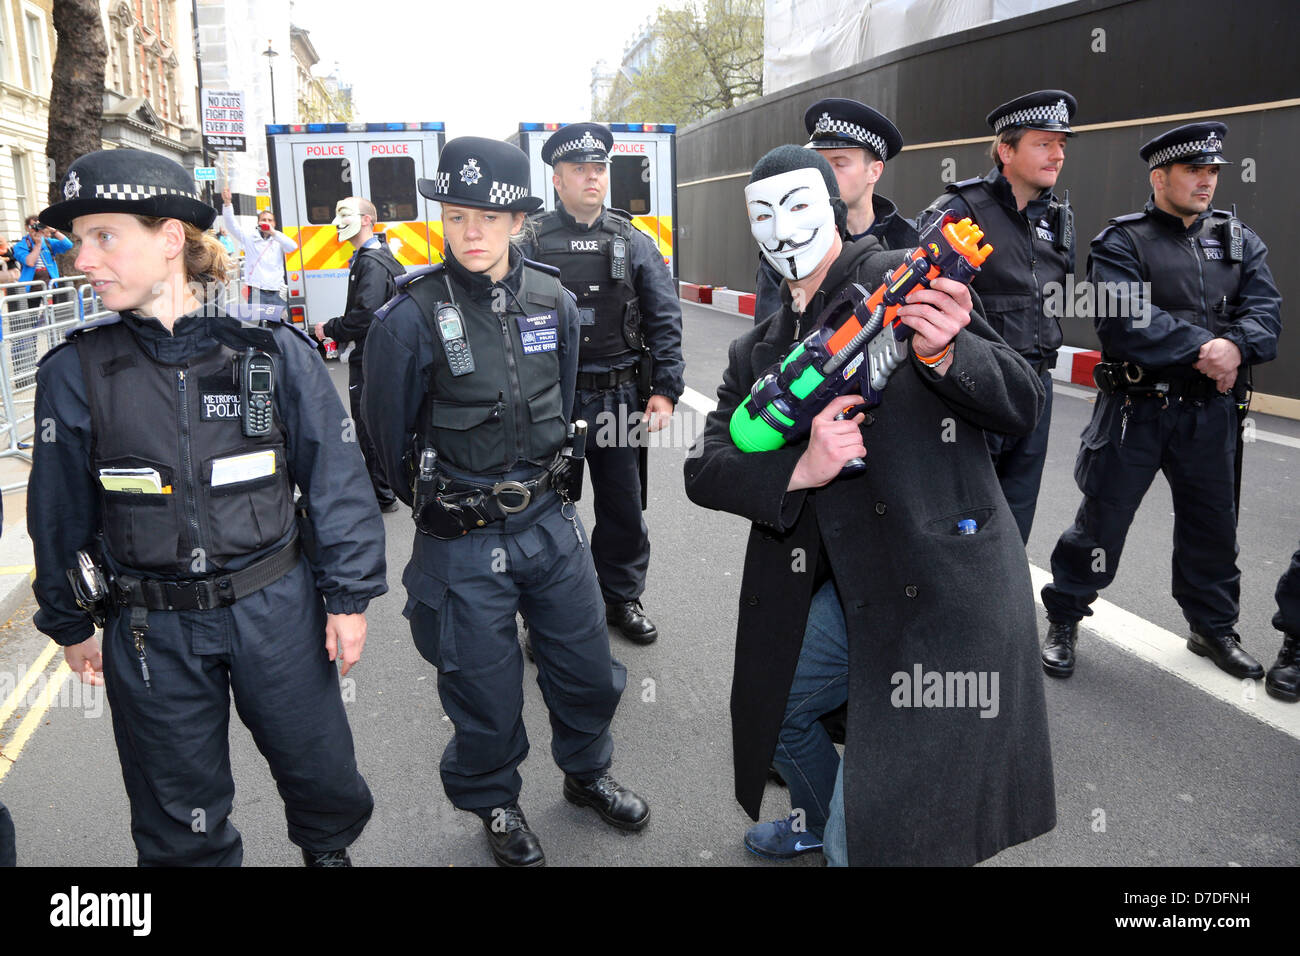 Londra, Regno Unito. Il 4 maggio 2013. I manifestanti bloccati dalla polizia all'anonimo UK anti-dimostrazione di austerità in Whitehall, uno protestor con una pistola ad acqua pistola, Londra, Inghilterra. Credito: Paul Brown / Alamy Live News Foto Stock